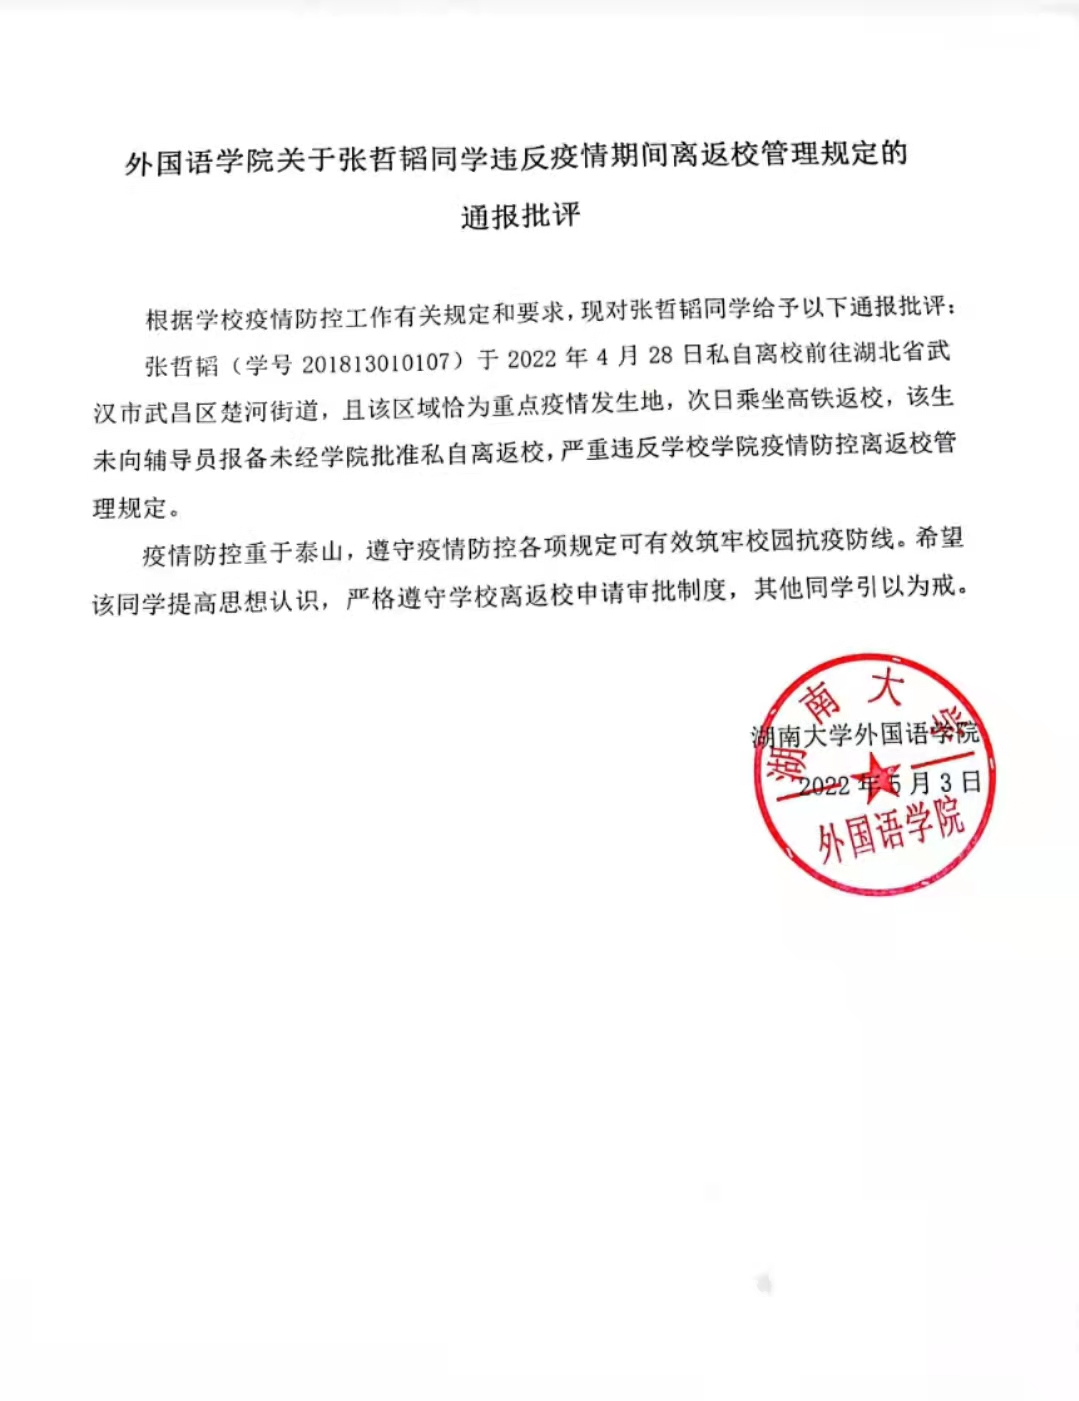 外国语学院关于张哲韬同学违反疫情期间离返校管理规定的通报批评